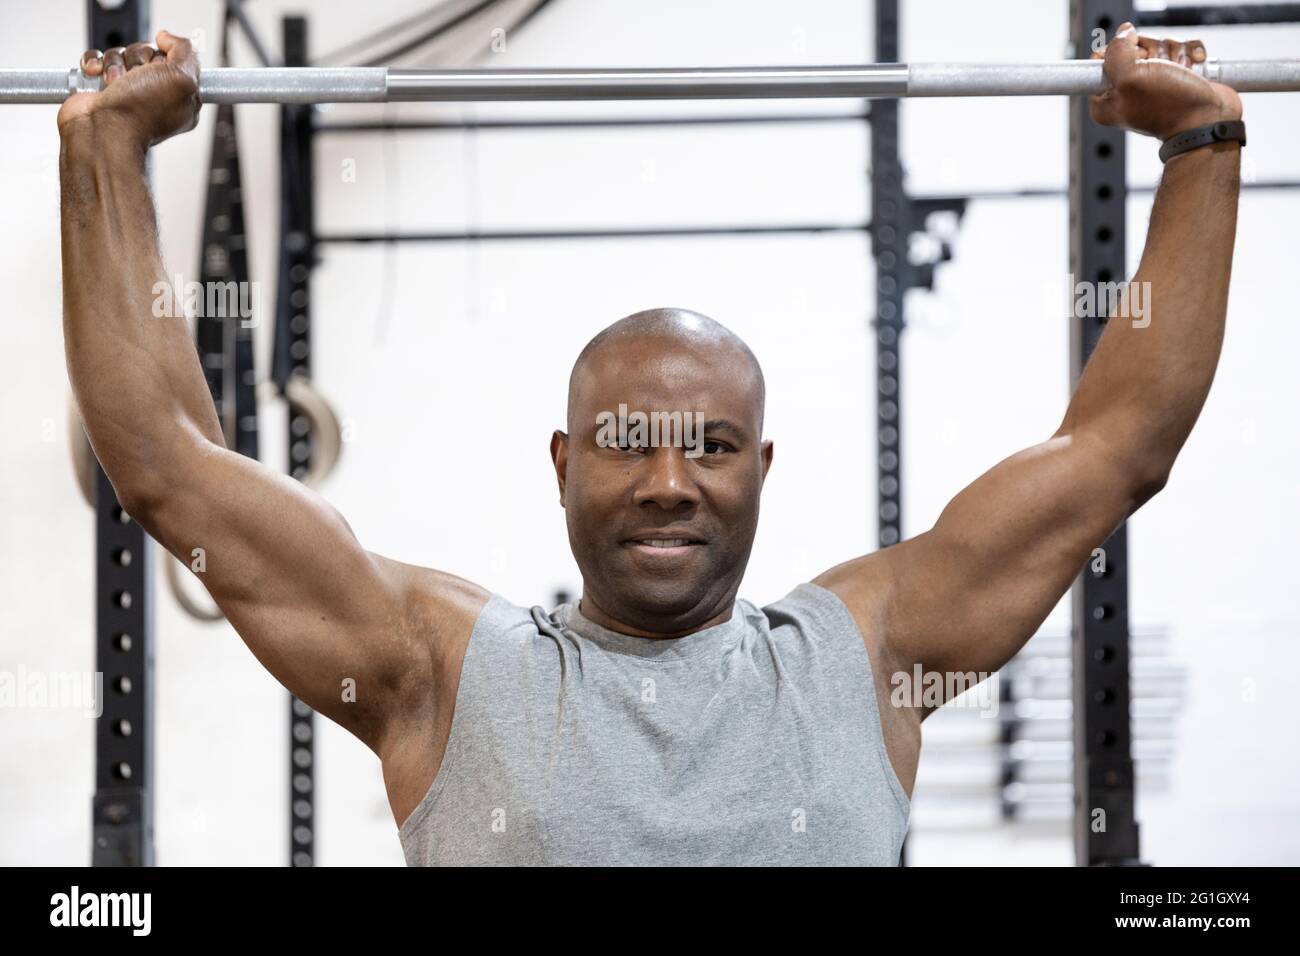 Ritratto di bodybuilder afroamericano che fa sforzo fisico in palestra. Allenamento duro. Foto Stock